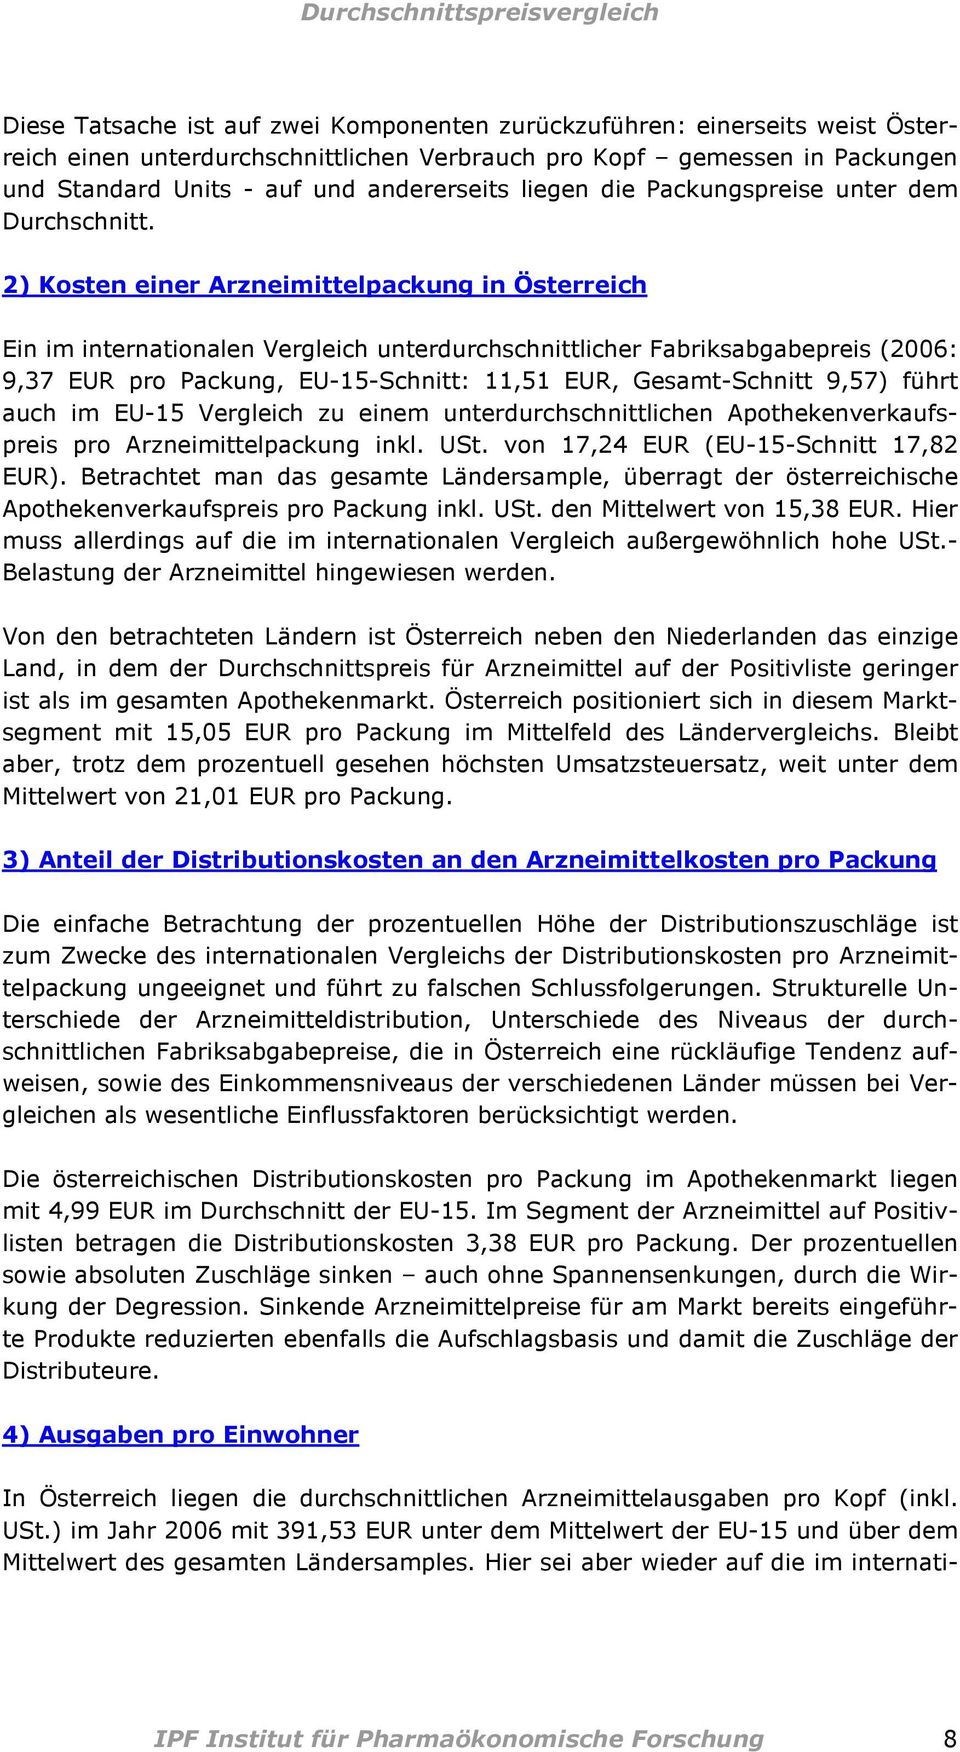 2) Kosten einer Arzneimittelpackung in Österreich Ein im internationalen Vergleich unterdurchschnittlicher Fabriksabgabepreis (2006: 9,37 EUR pro Packung, EU-15-Schnitt: 11,51 EUR, Gesamt-Schnitt